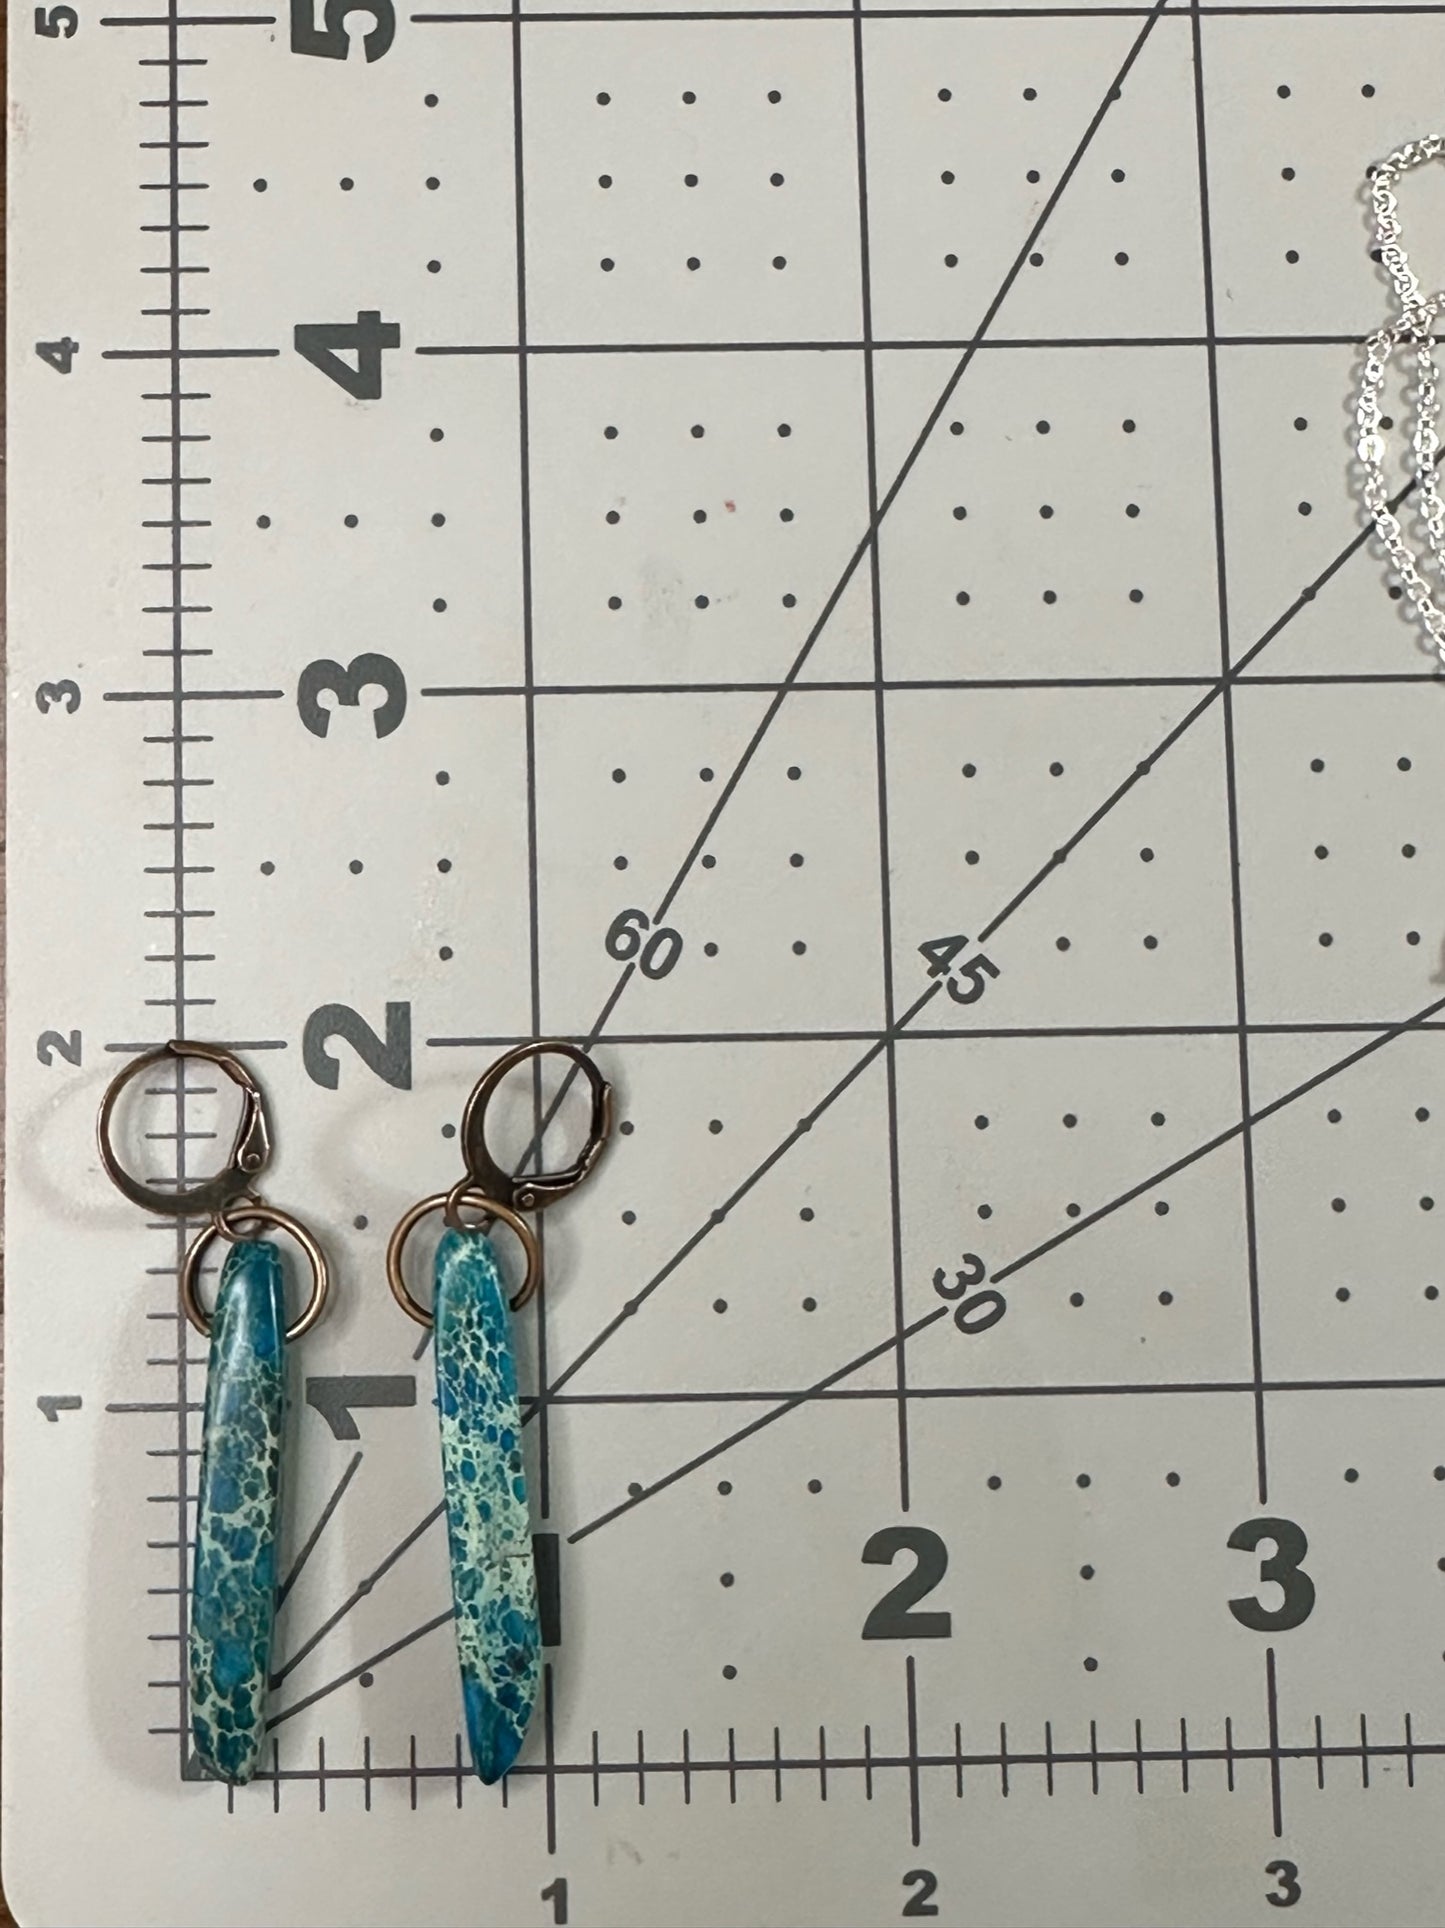 Handmade Turquoise Megnasite Earrings